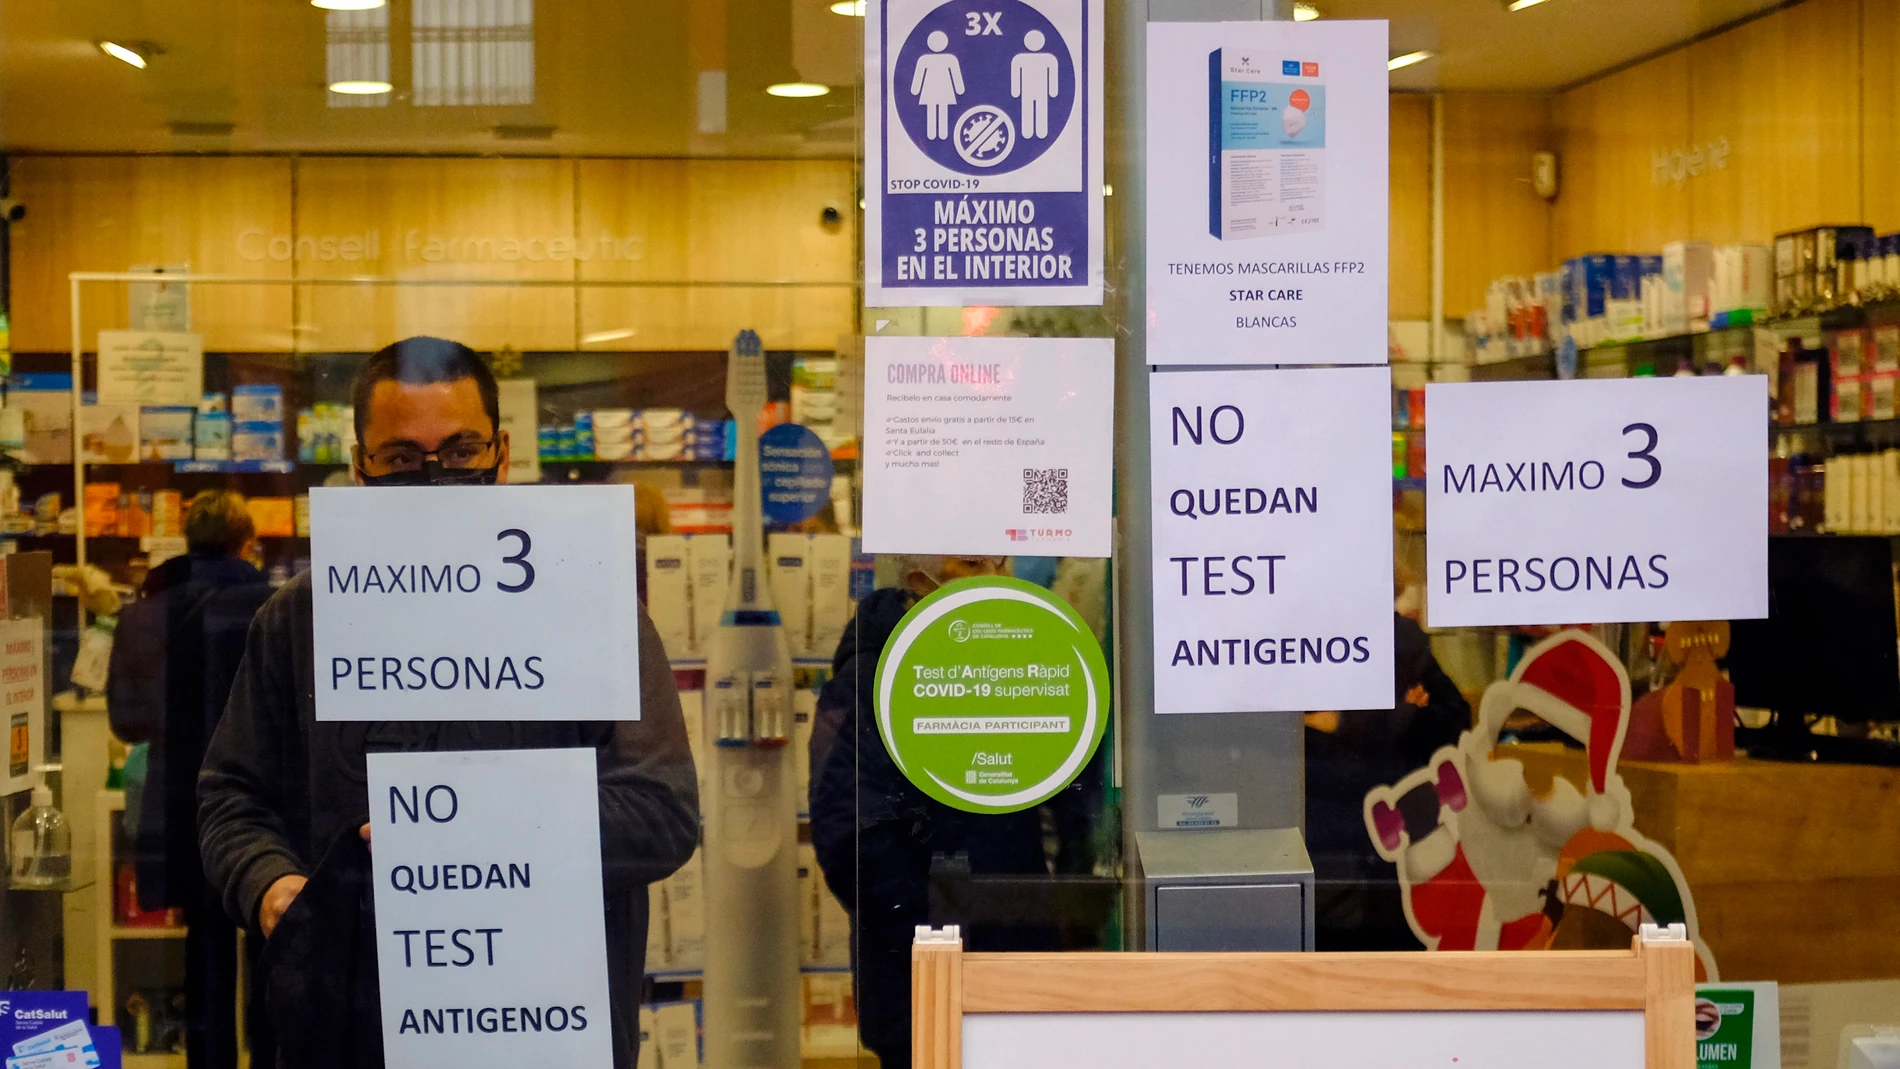 Una farmacia de L'Hospitalet de Llobregat (Barcelona) muestra un cartel en el que advierte a los clientes de que no disponen de test de antígenos